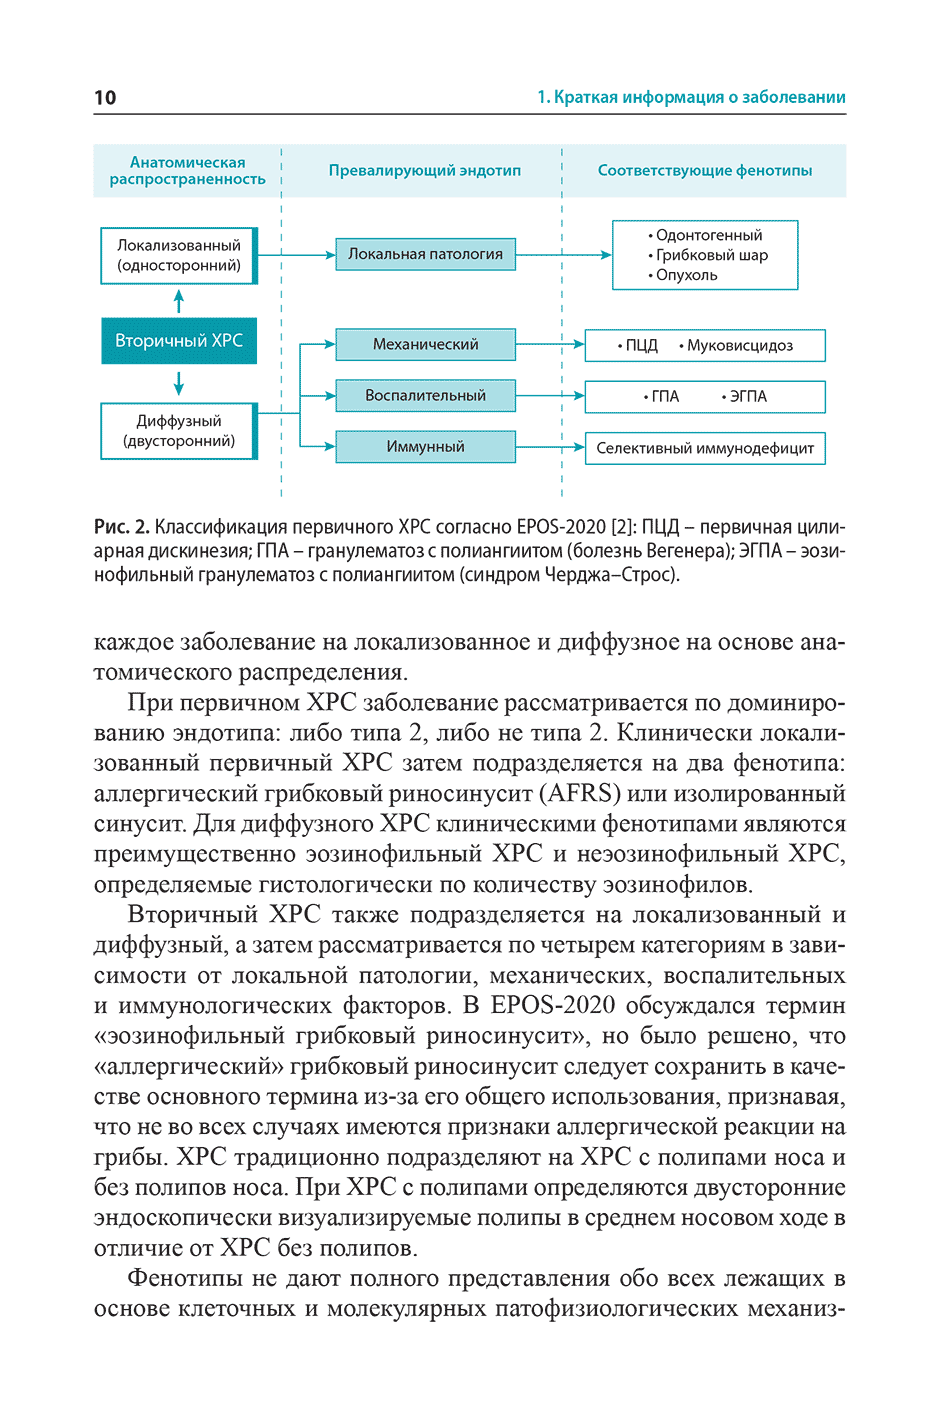 Рис. 2. Классификация первичного ХРС согласно ЕР05-2020